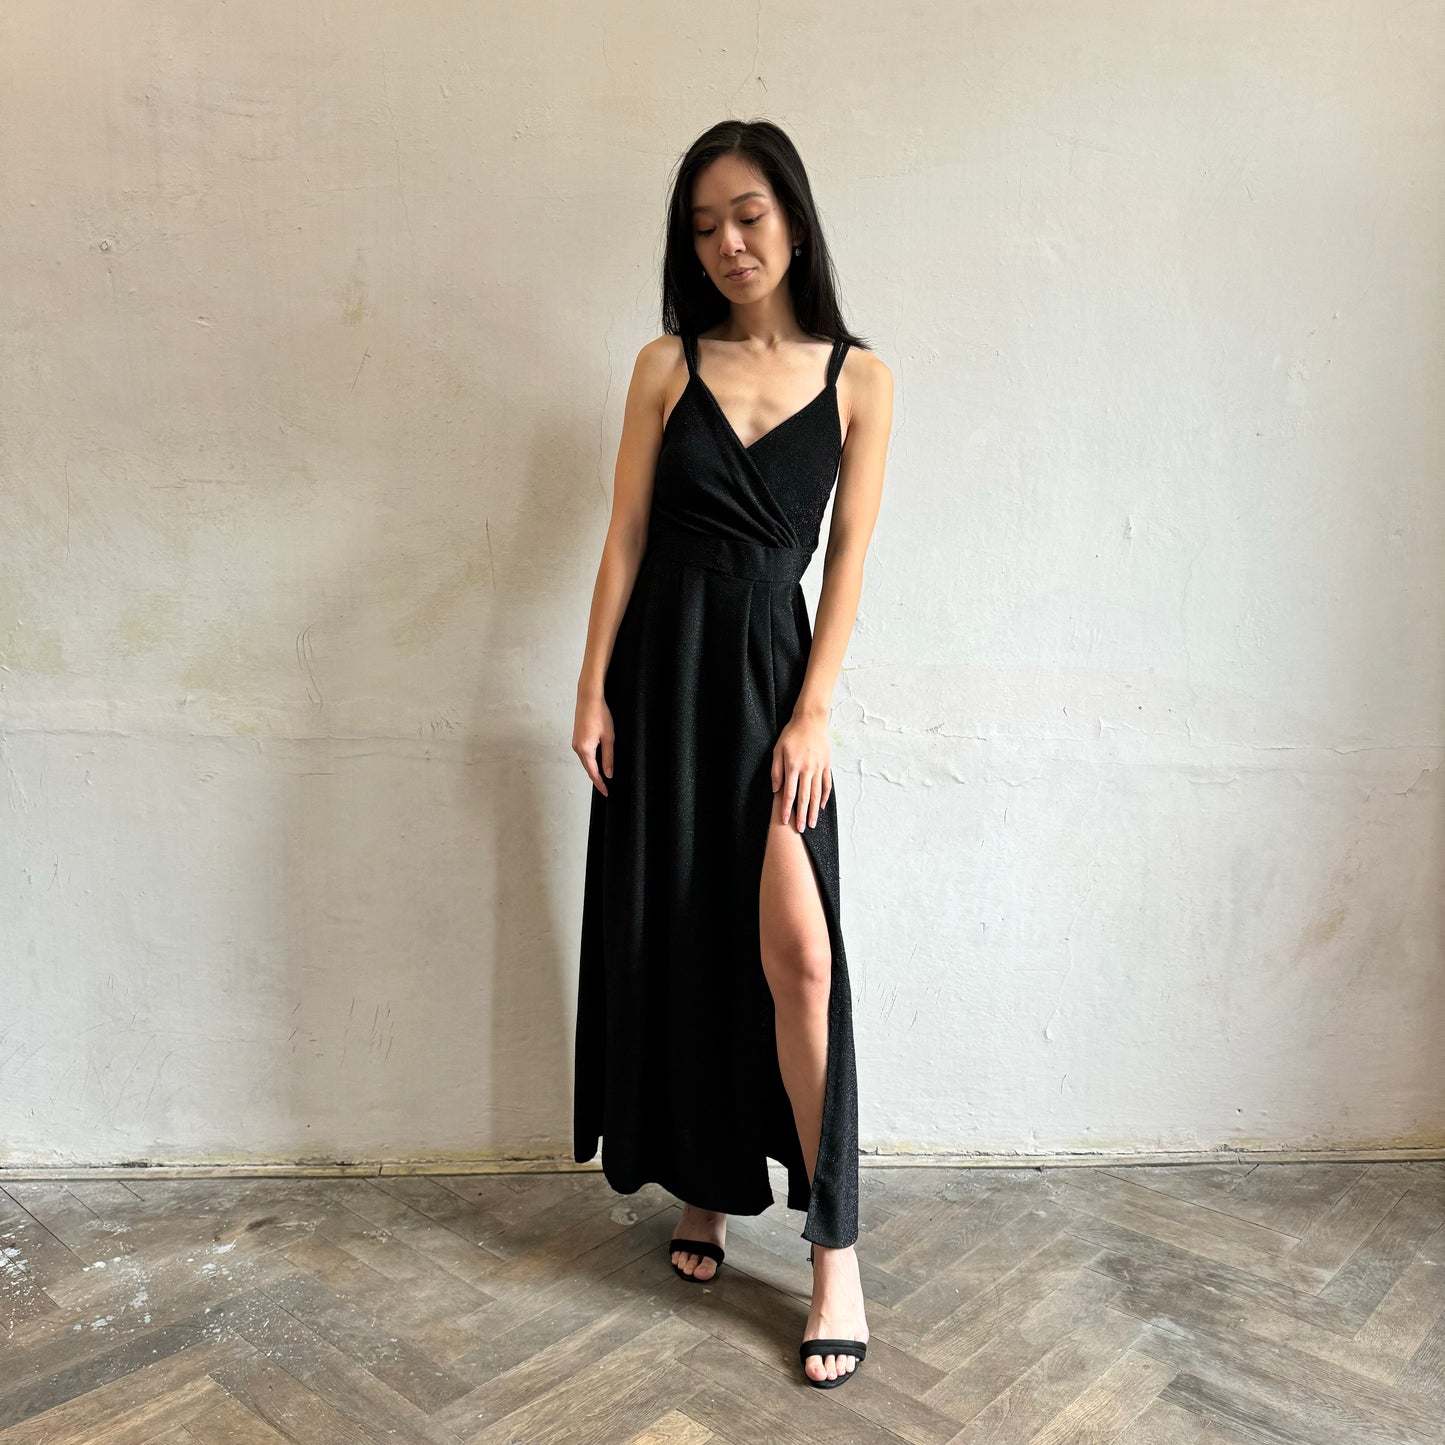 Modelka asijského původu pózující zepředu se třpytivými společenskými šaty v černé barvě